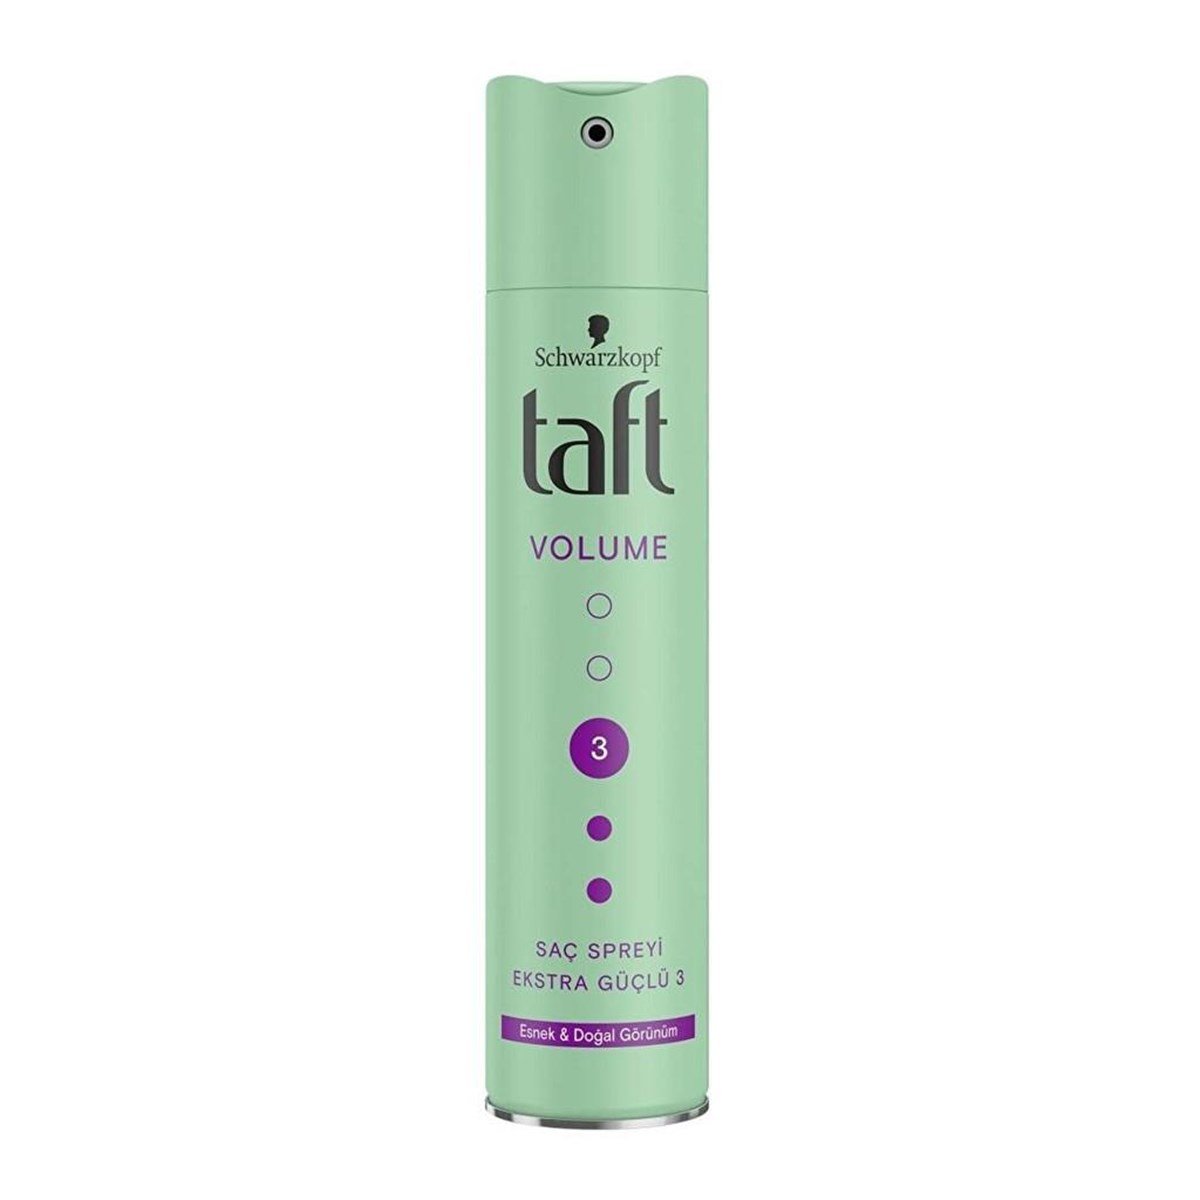 Taft Volume Esnek Doğal Görünüm Ekstra Güçlü 3 Saç Spreyi 250ml | Farma Ucuz